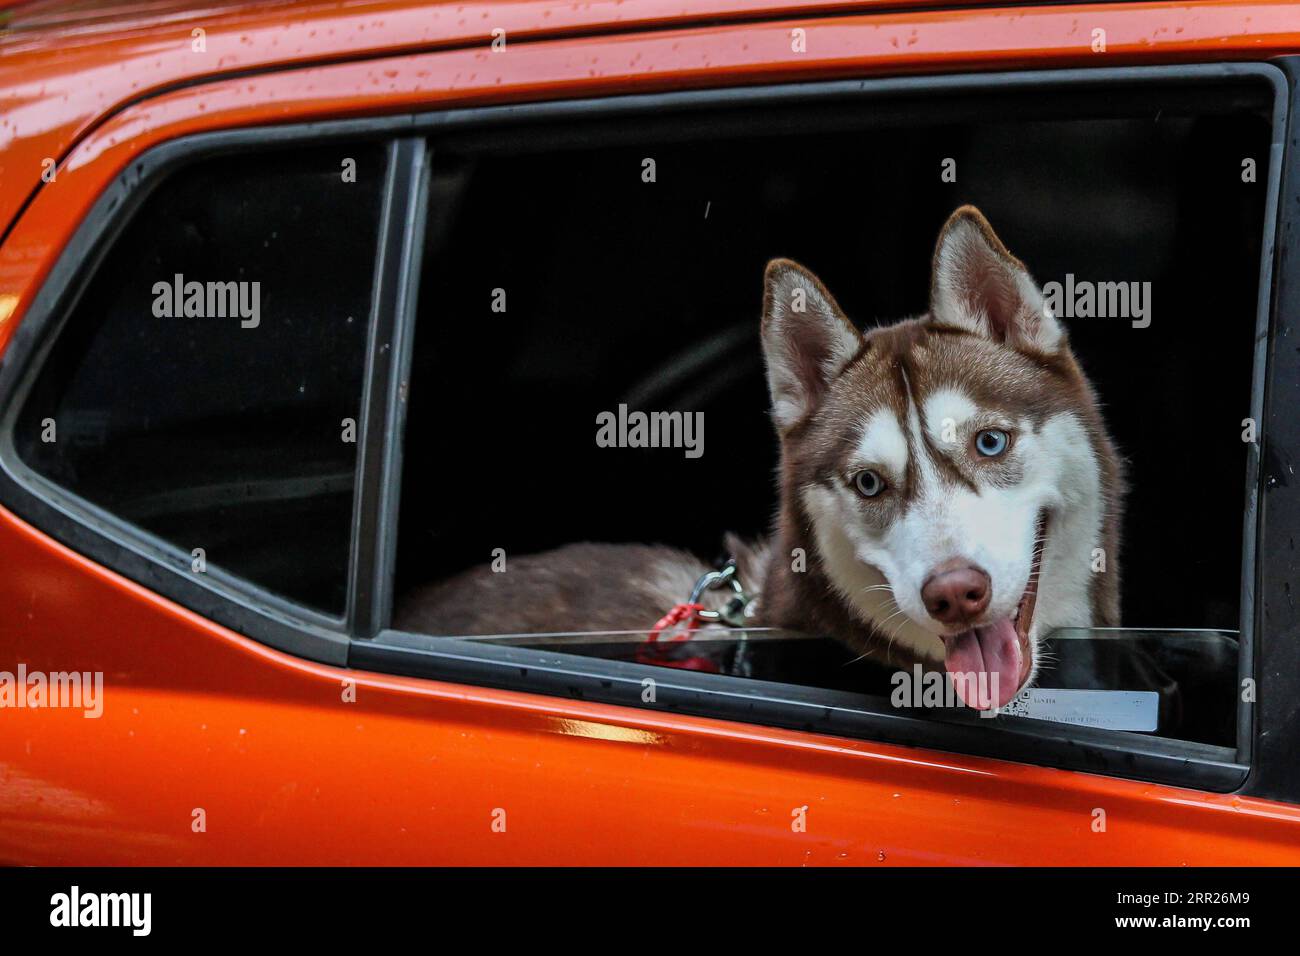 201004 -- MANILA, 4 ottobre 2020 -- Un cane domestico è visto all'interno di un'auto durante una benedizione di un animale domestico drive-thru a Manila, nelle Filippine, il 4 ottobre 2020. La benedizione degli animali domestici drive-thru si svolge in mezzo alla pandemia di COVID-19 per celebrare la giornata mondiale degli animali che si celebra ogni anno il 4 ottobre. FILIPPINE-MANILA-WORLD ANIMAL-DRIVE-THRU PET BLESSING ROUELLEXUMALI PUBLICATIONXNOTXINXCHN Foto Stock